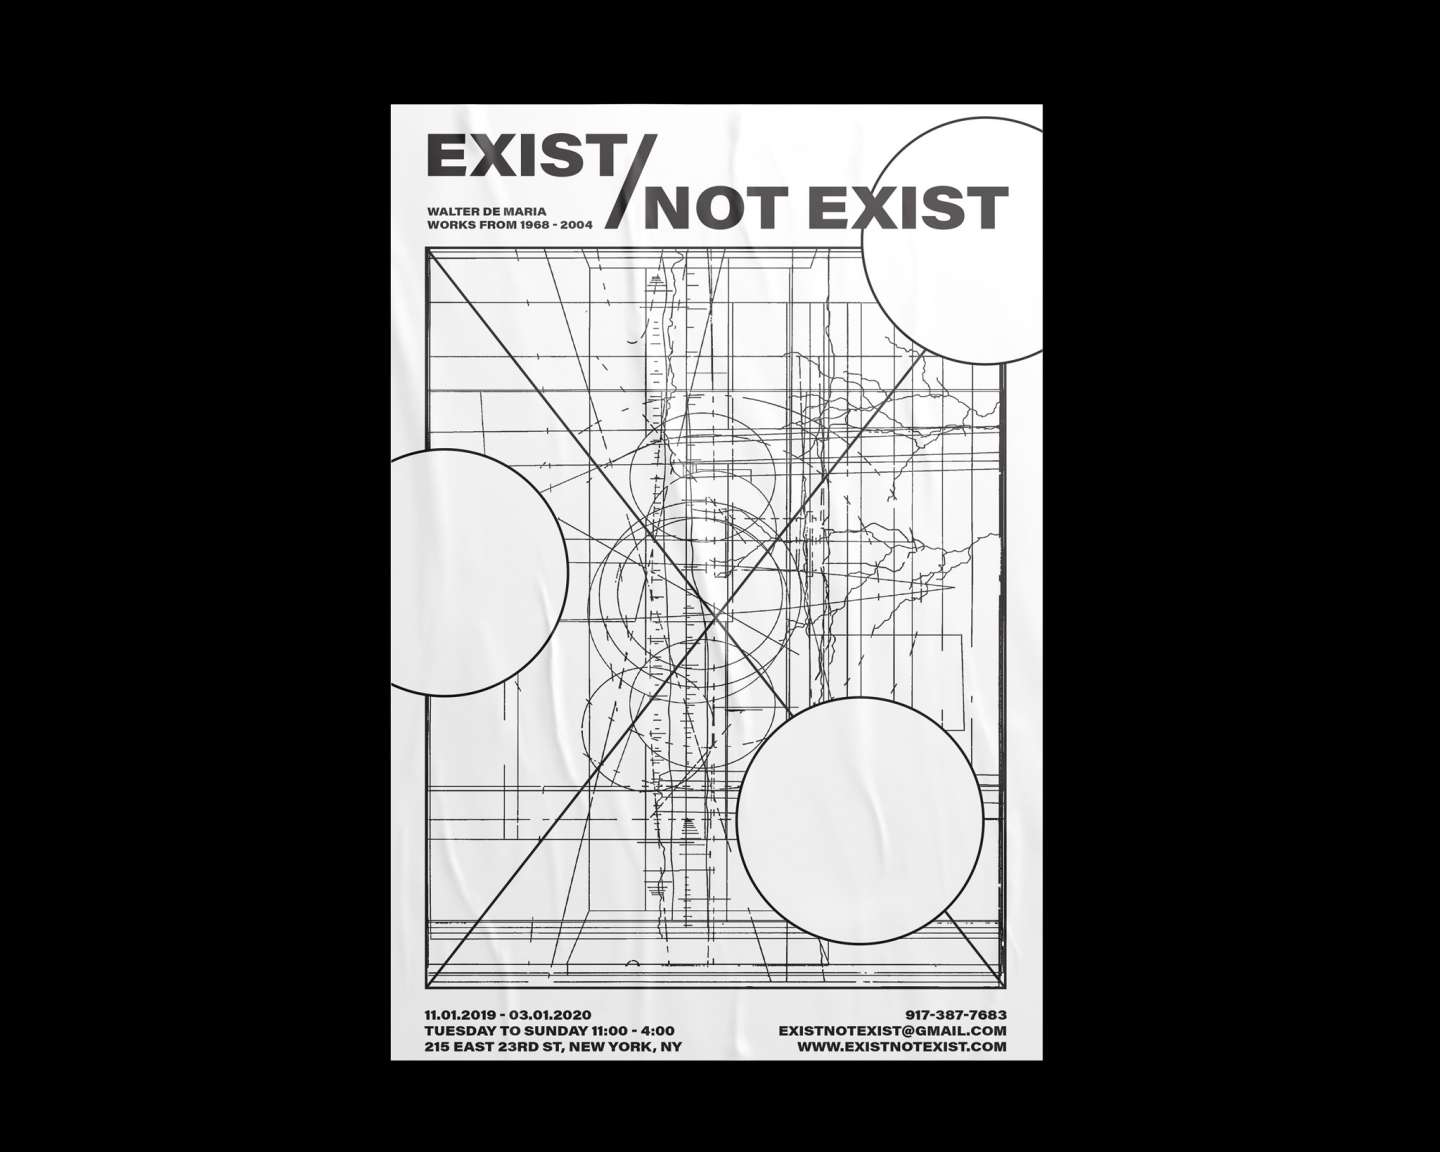 Exist/Not Exist